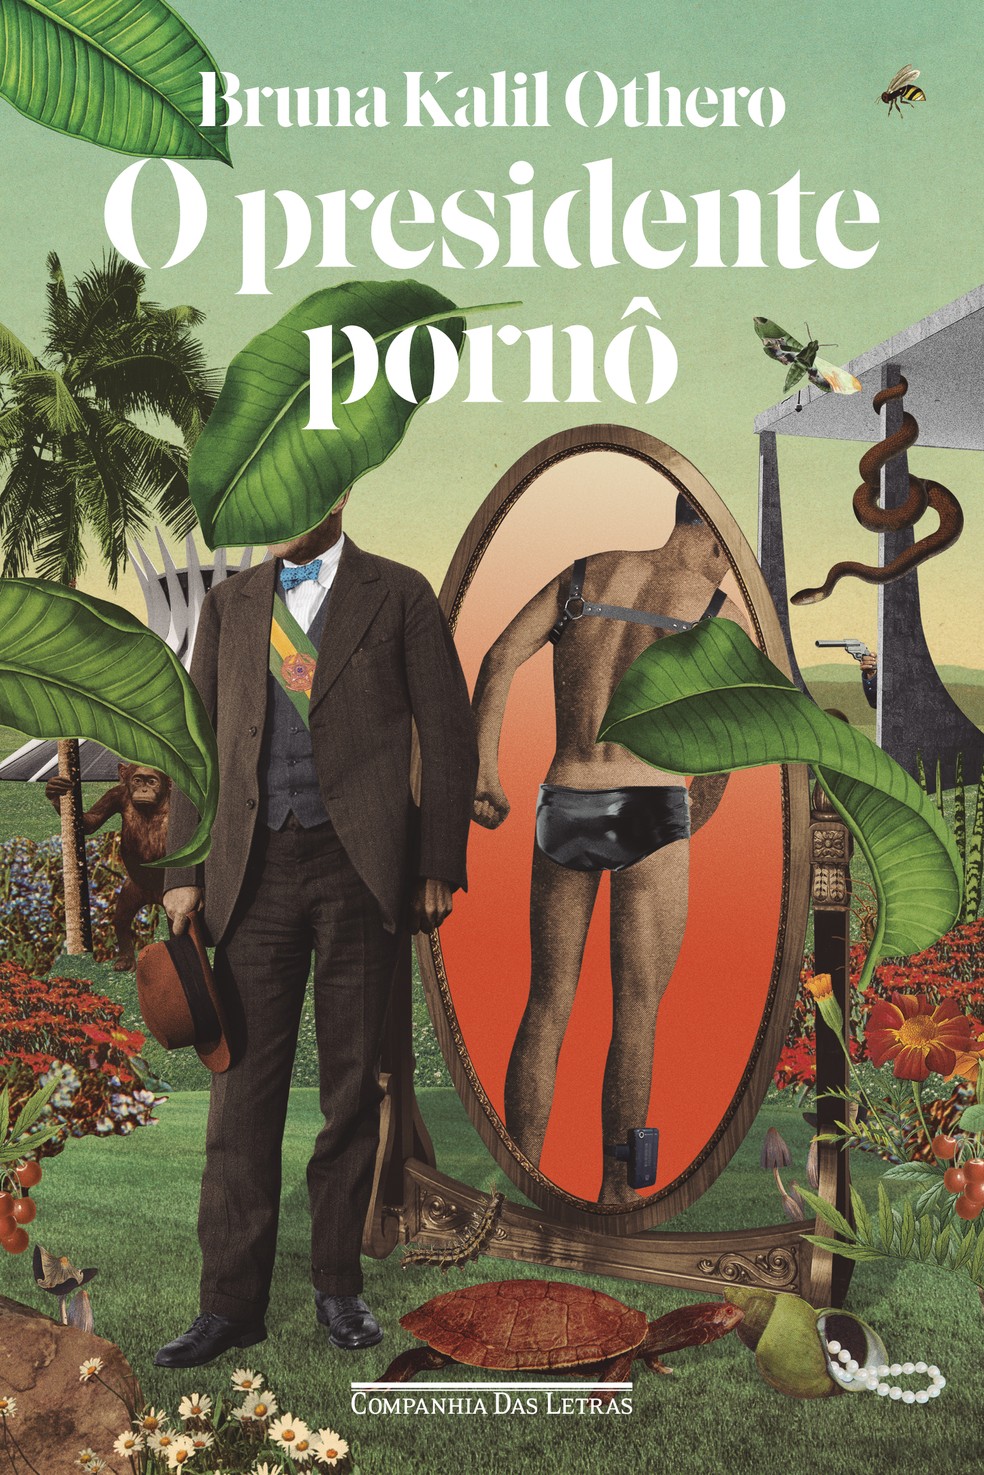 Capa de "O presidente pornô", romance de Bruna Kalil Othero publicado pela Companhia das Letras — Foto: Reprodução